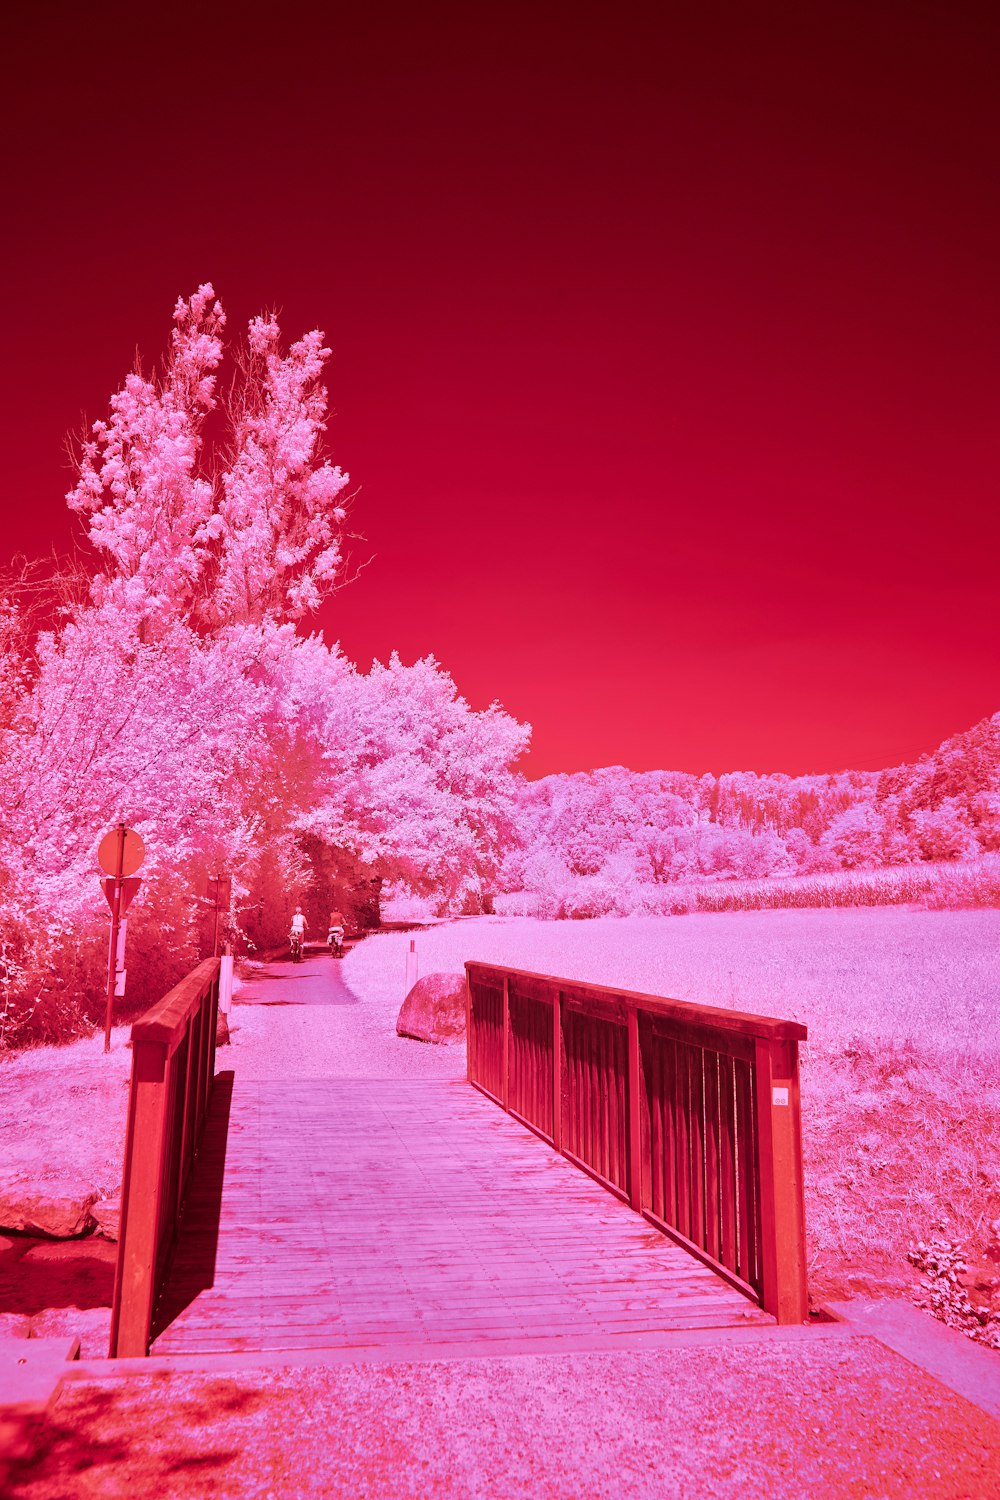 un'immagine a infrarossi rossa e rosa di un ponte